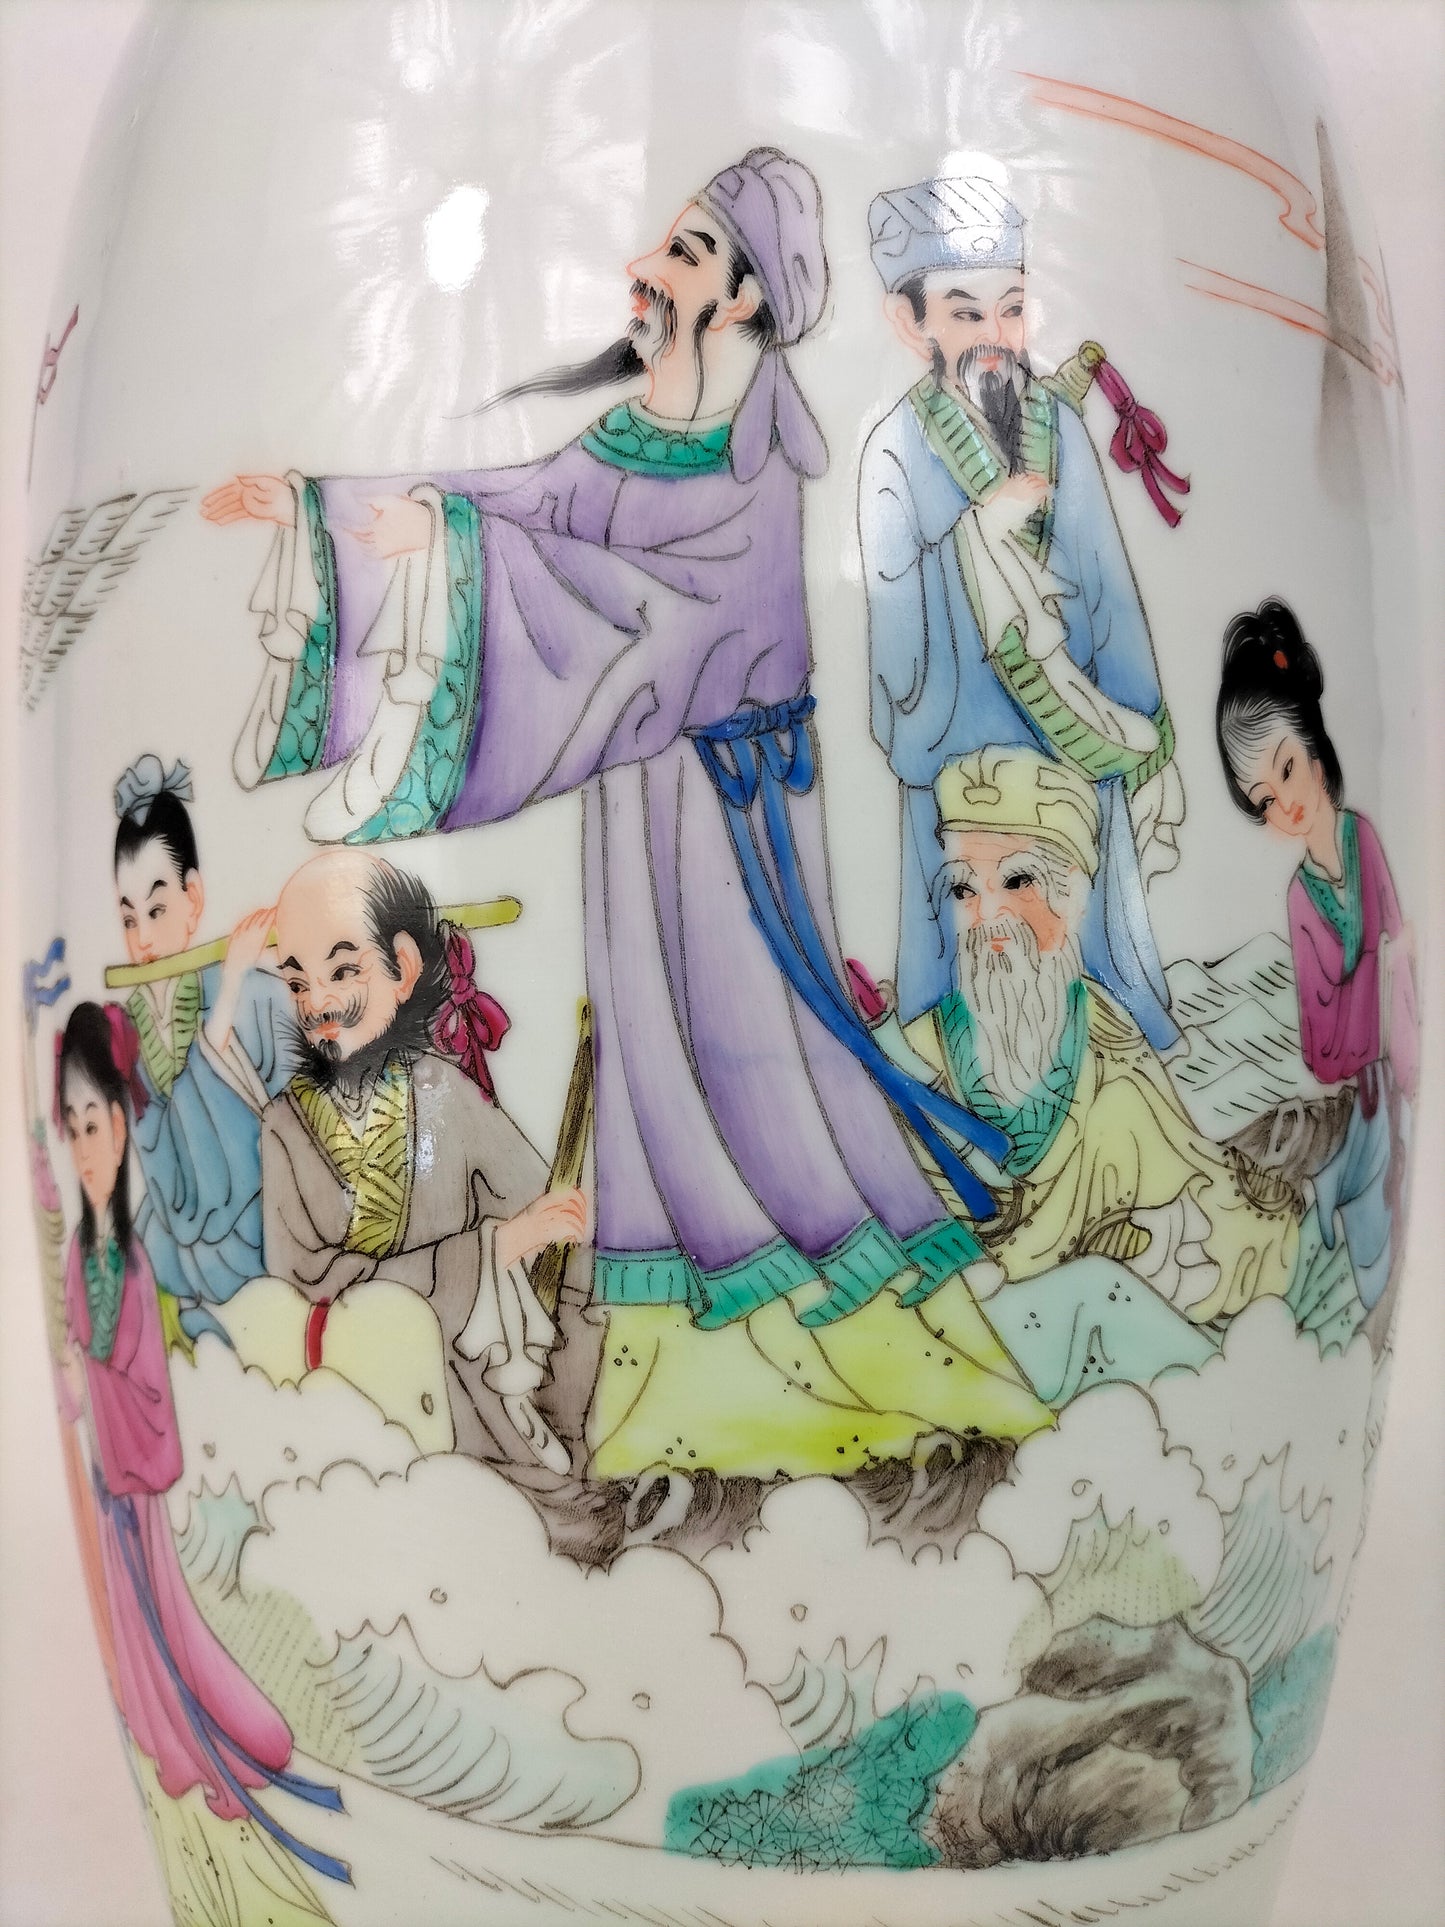 装饰八仙的大型中国粉彩花瓶 // 景德镇 - 20 世纪